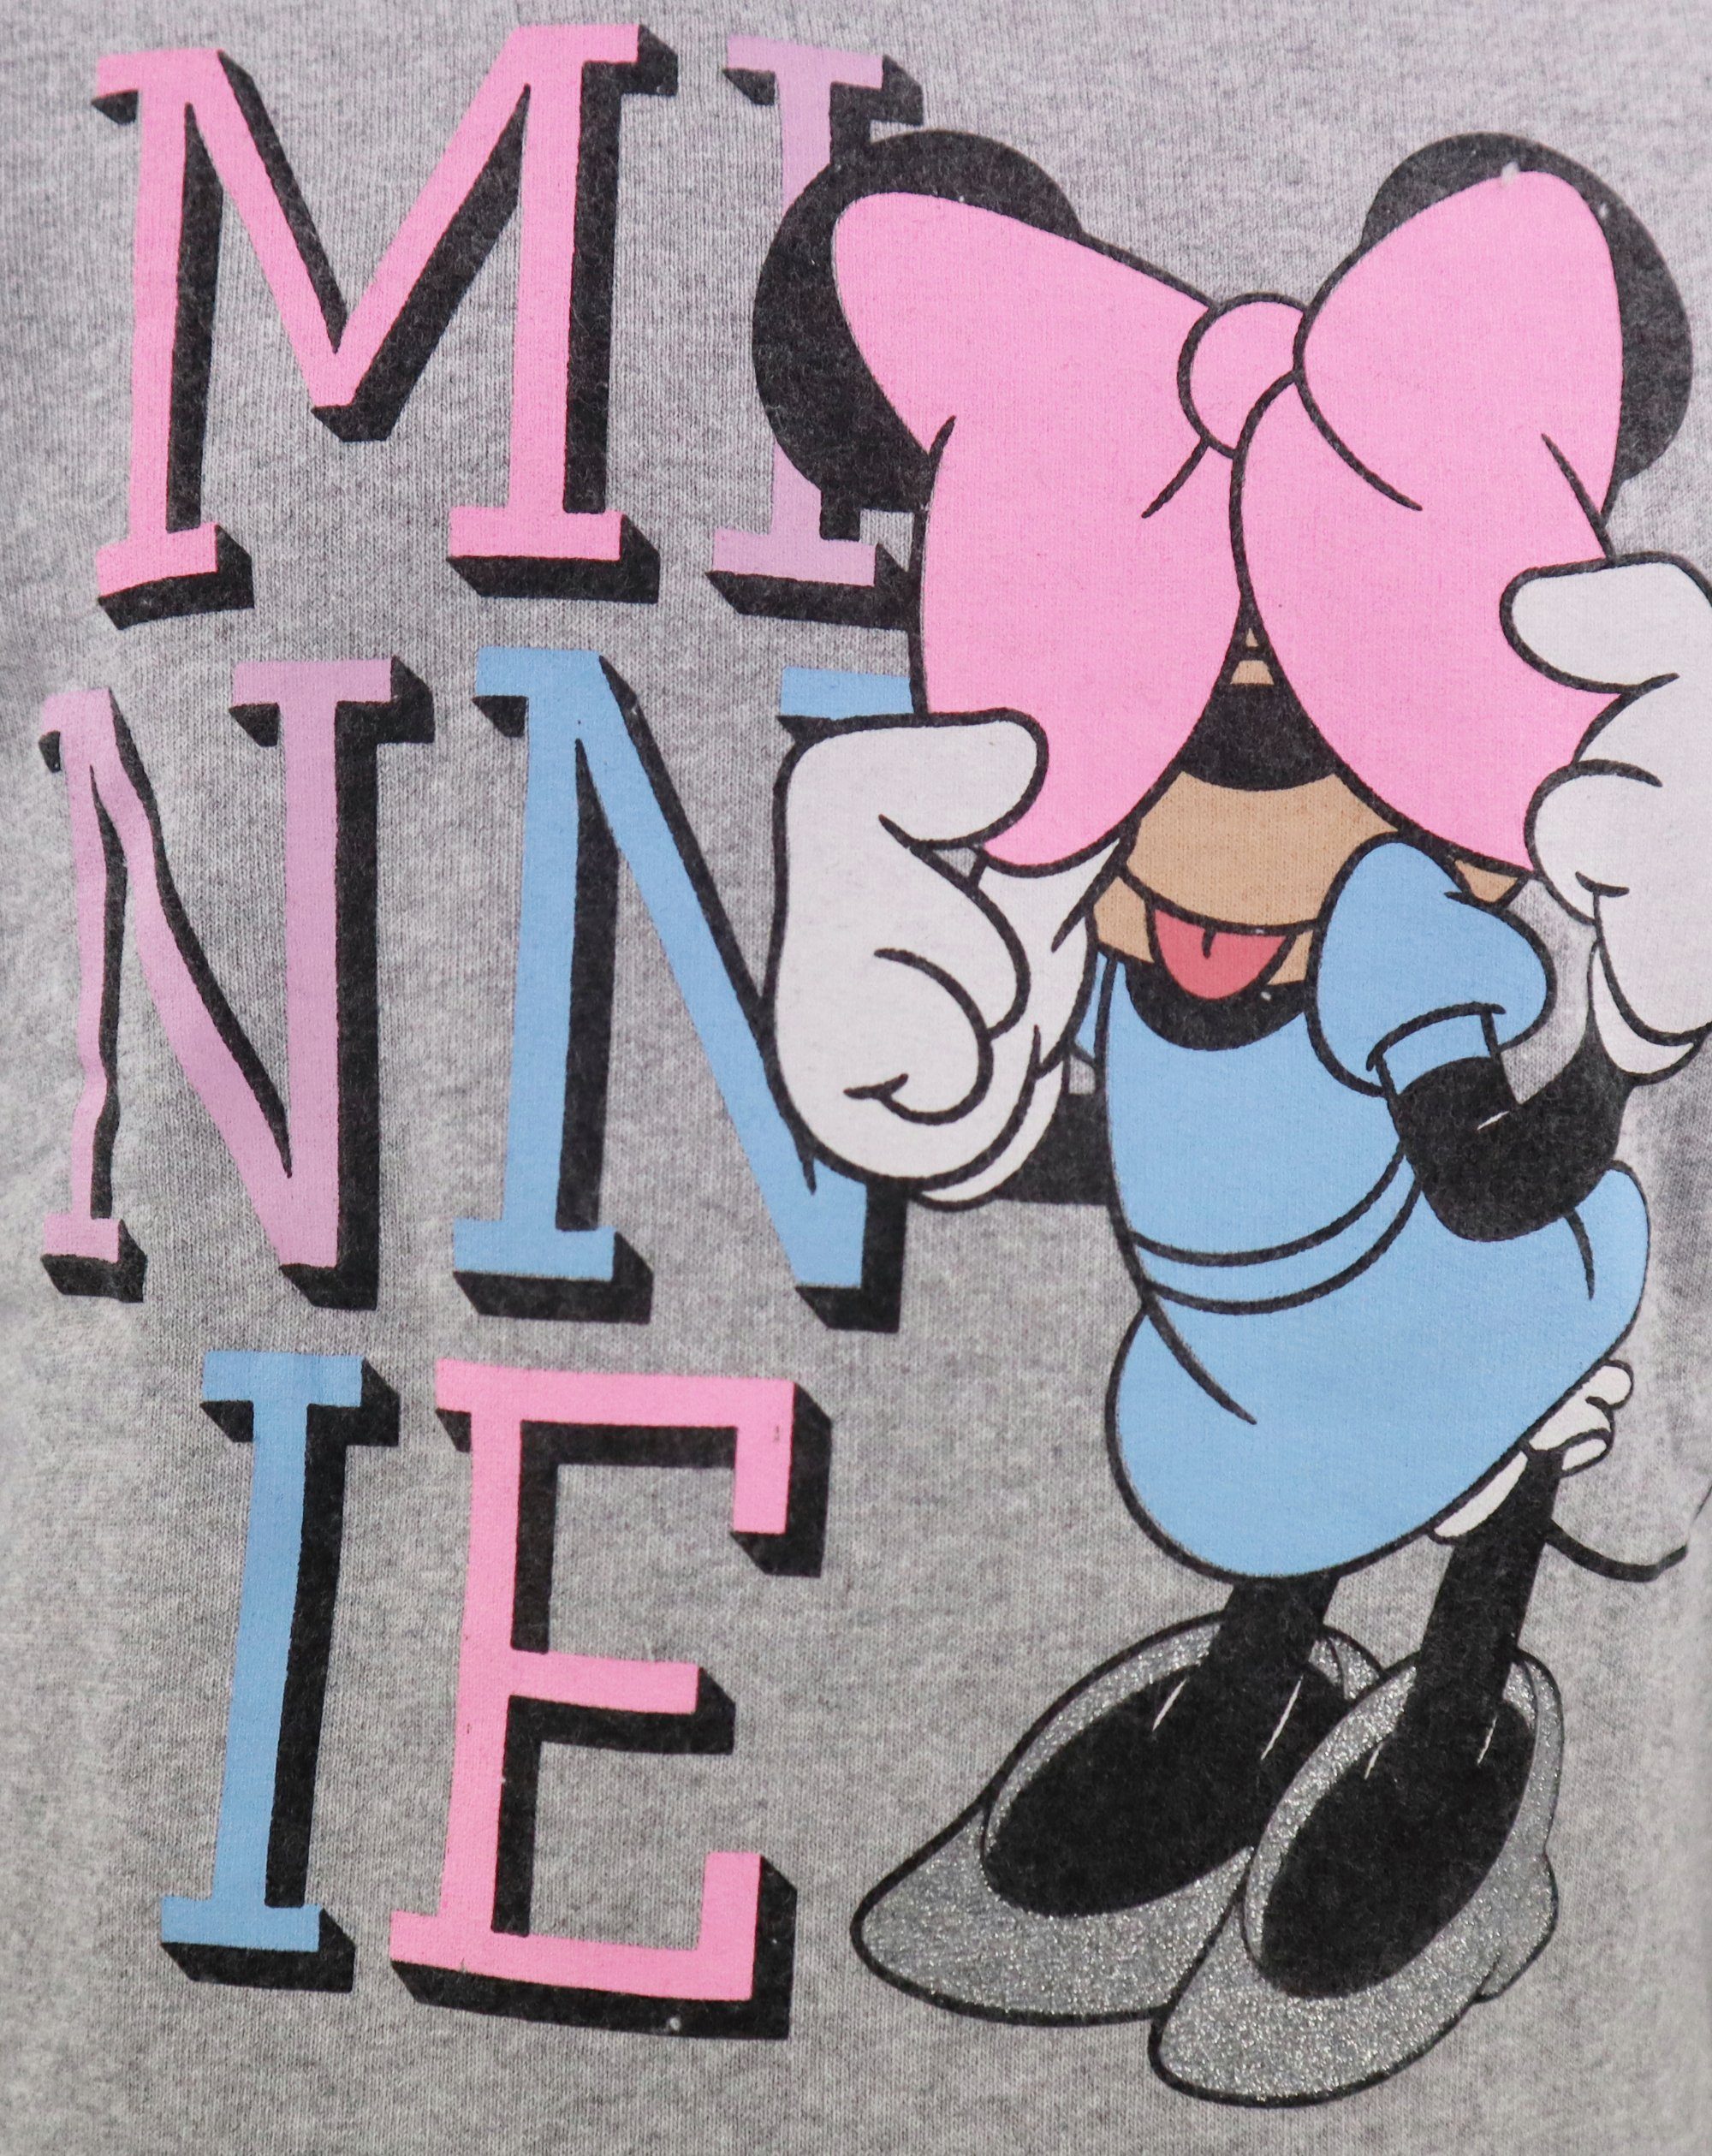 Disney Sweater bis 104 Mouse Minnie 134 Disney Pullover Kinder Gr. Minnie Mädchen Maus